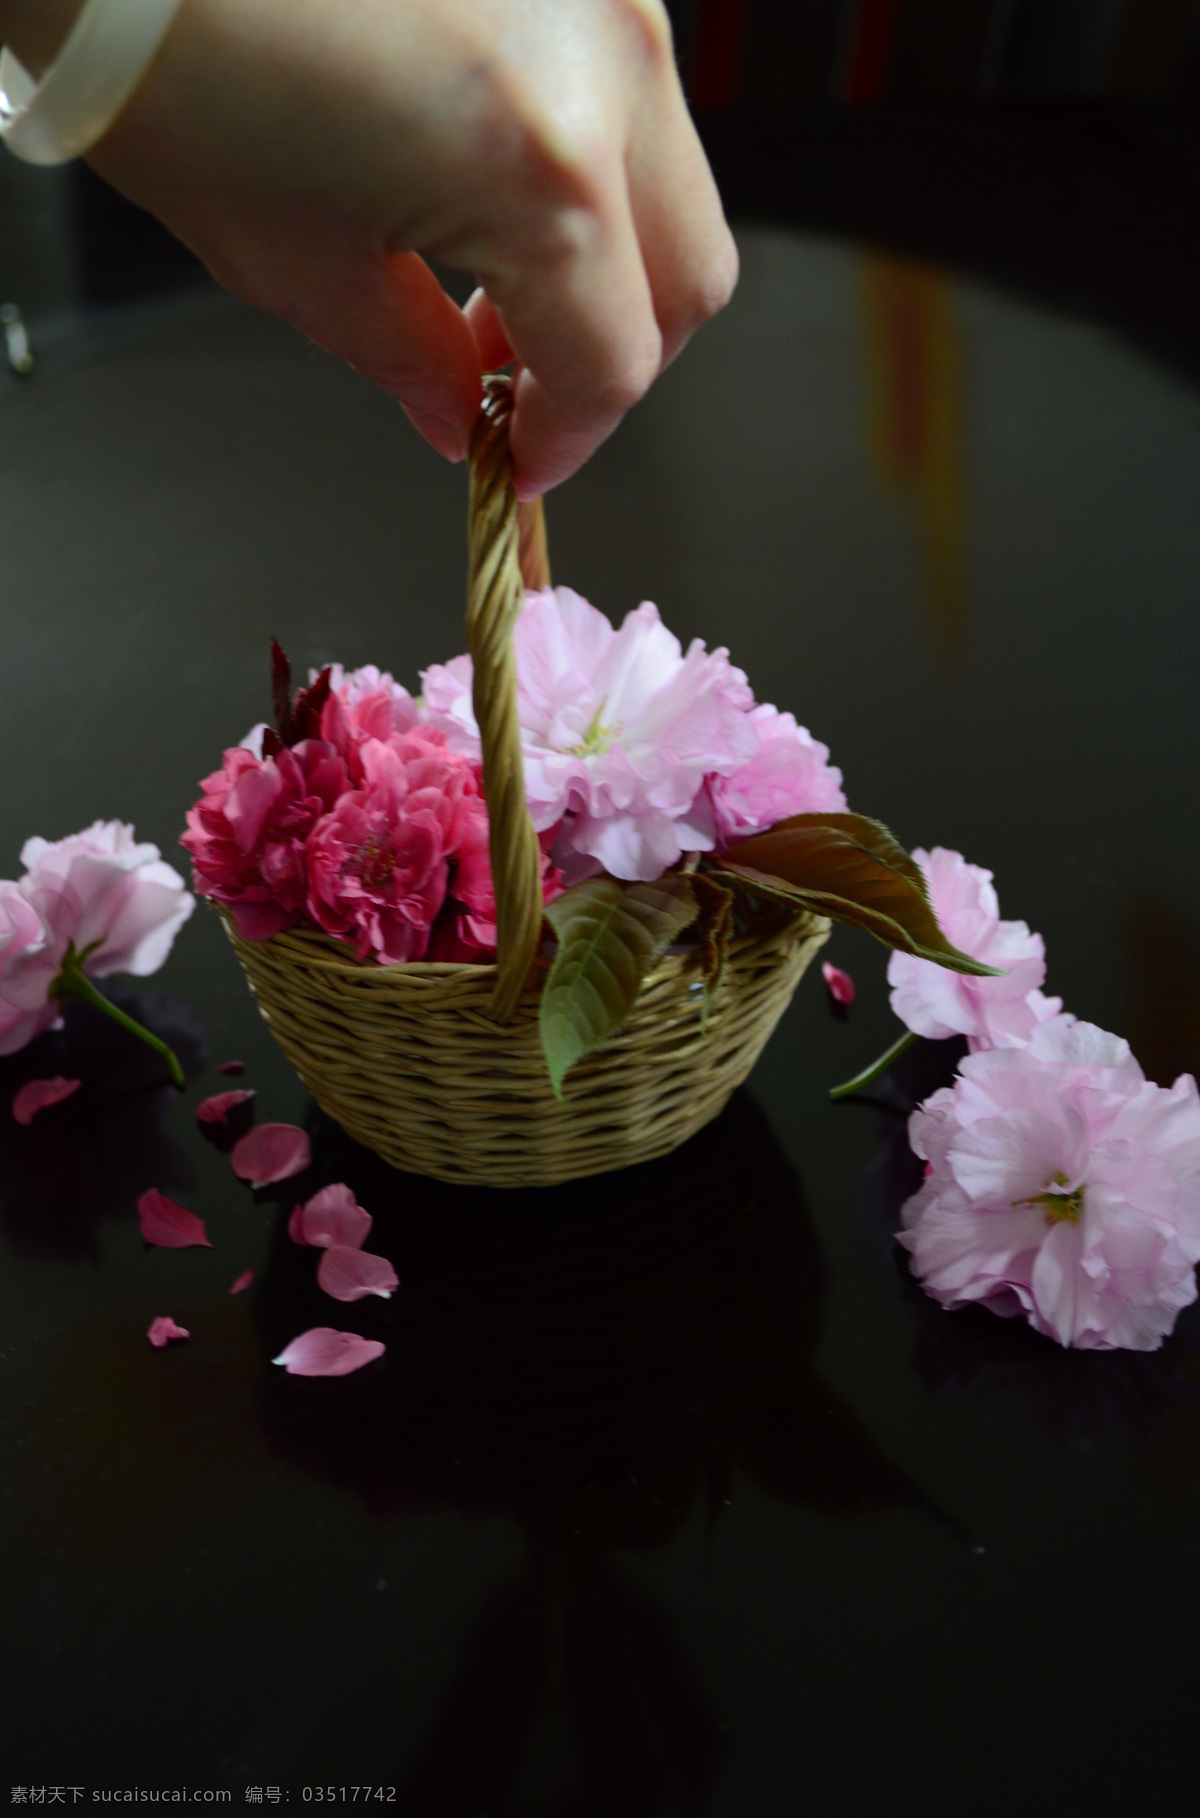 装满花的花篮 花篮 花 手 粉红色 粉色 红色 手镯 黑褐色 提着花篮 文化艺术